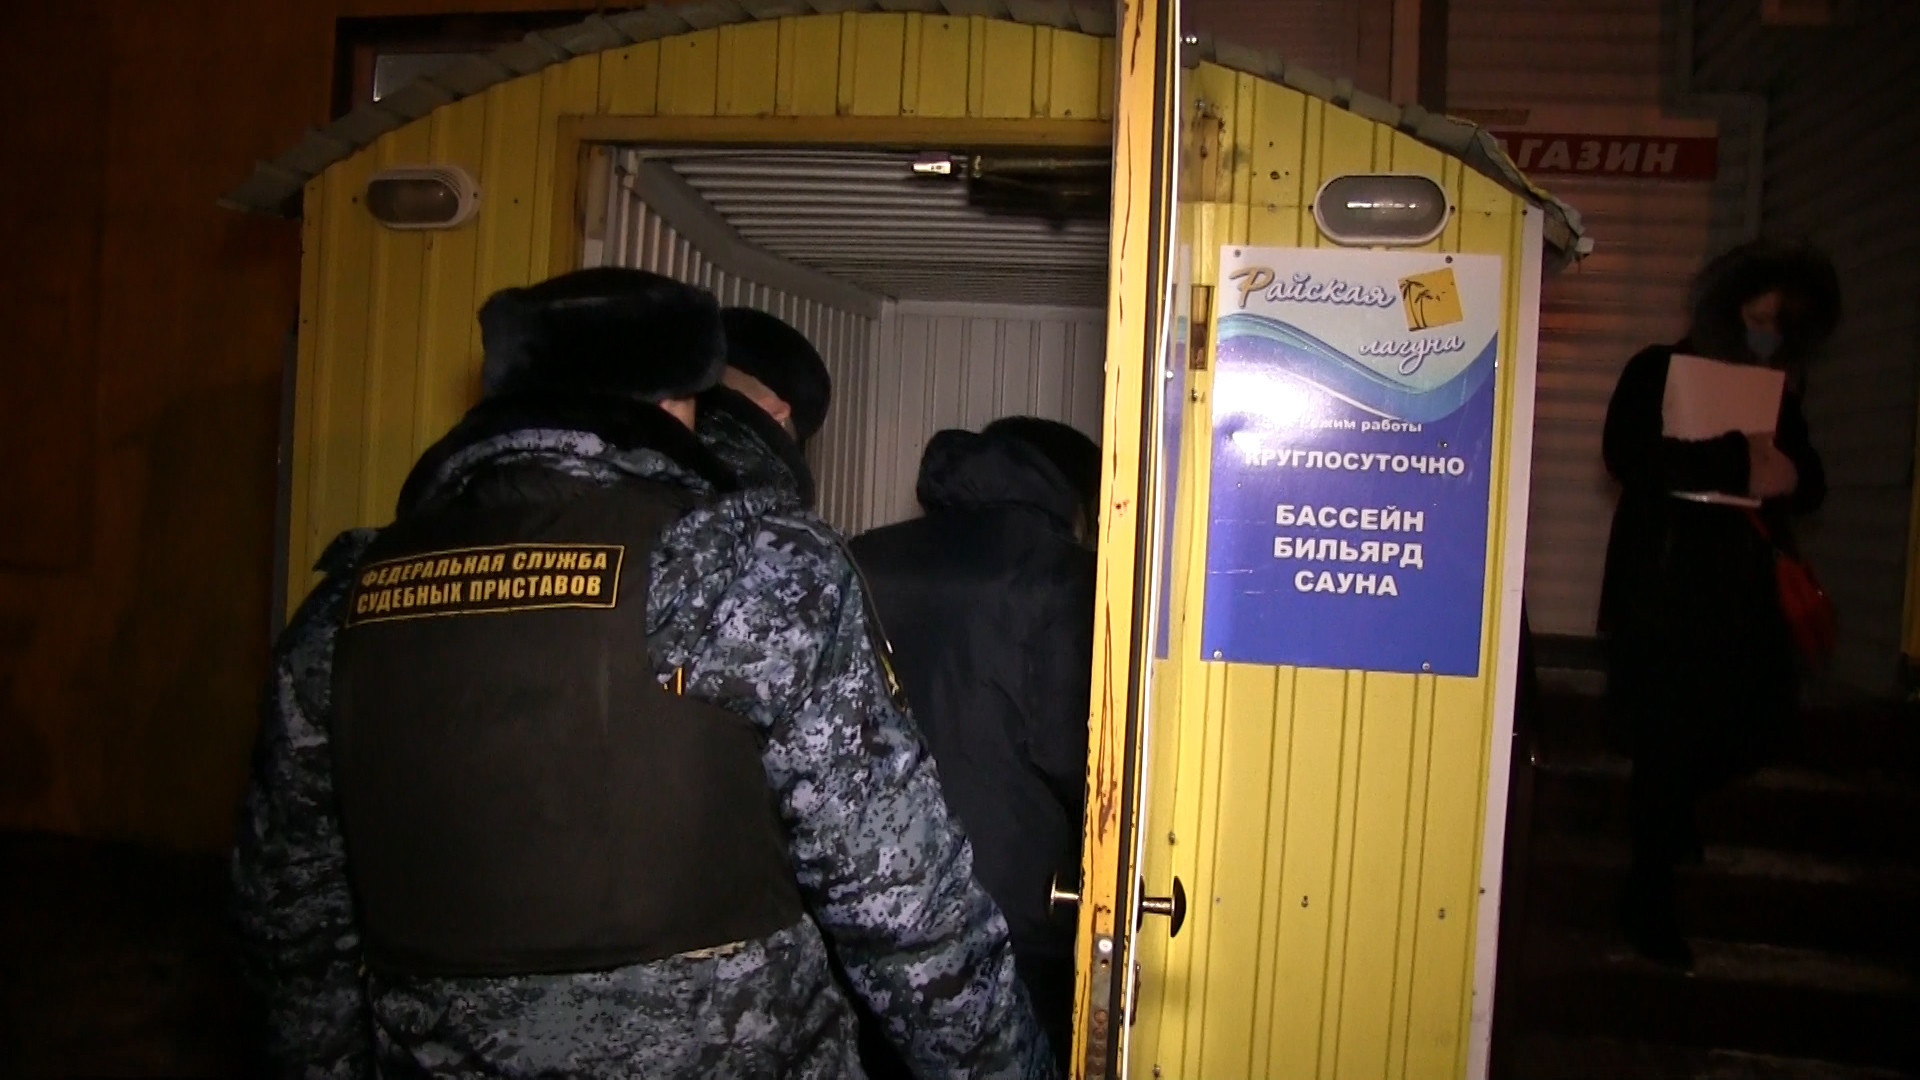 В Омске на месяц закрыли сауну, где дети отравились хлором #Омск #Общество #Сегодня